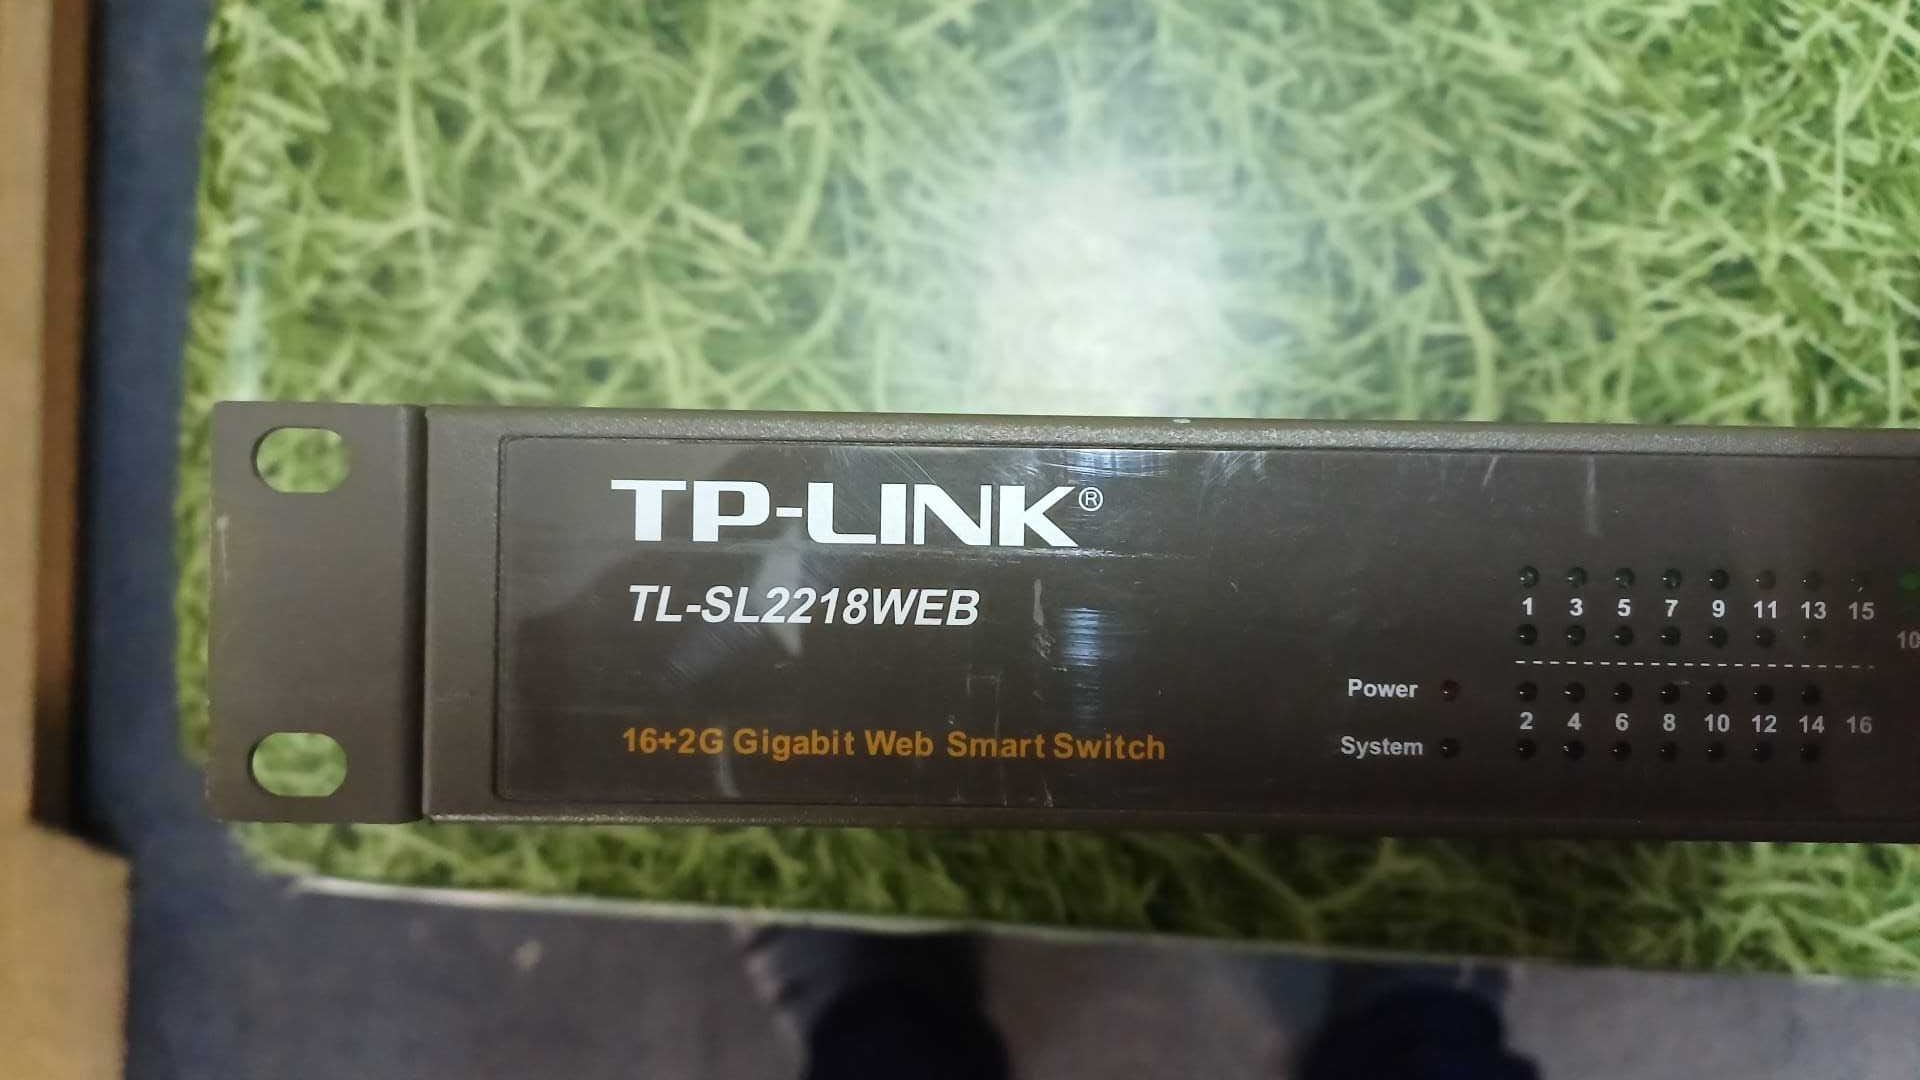 TP-Link TL-SL2218WEB 16+2G Gigabit